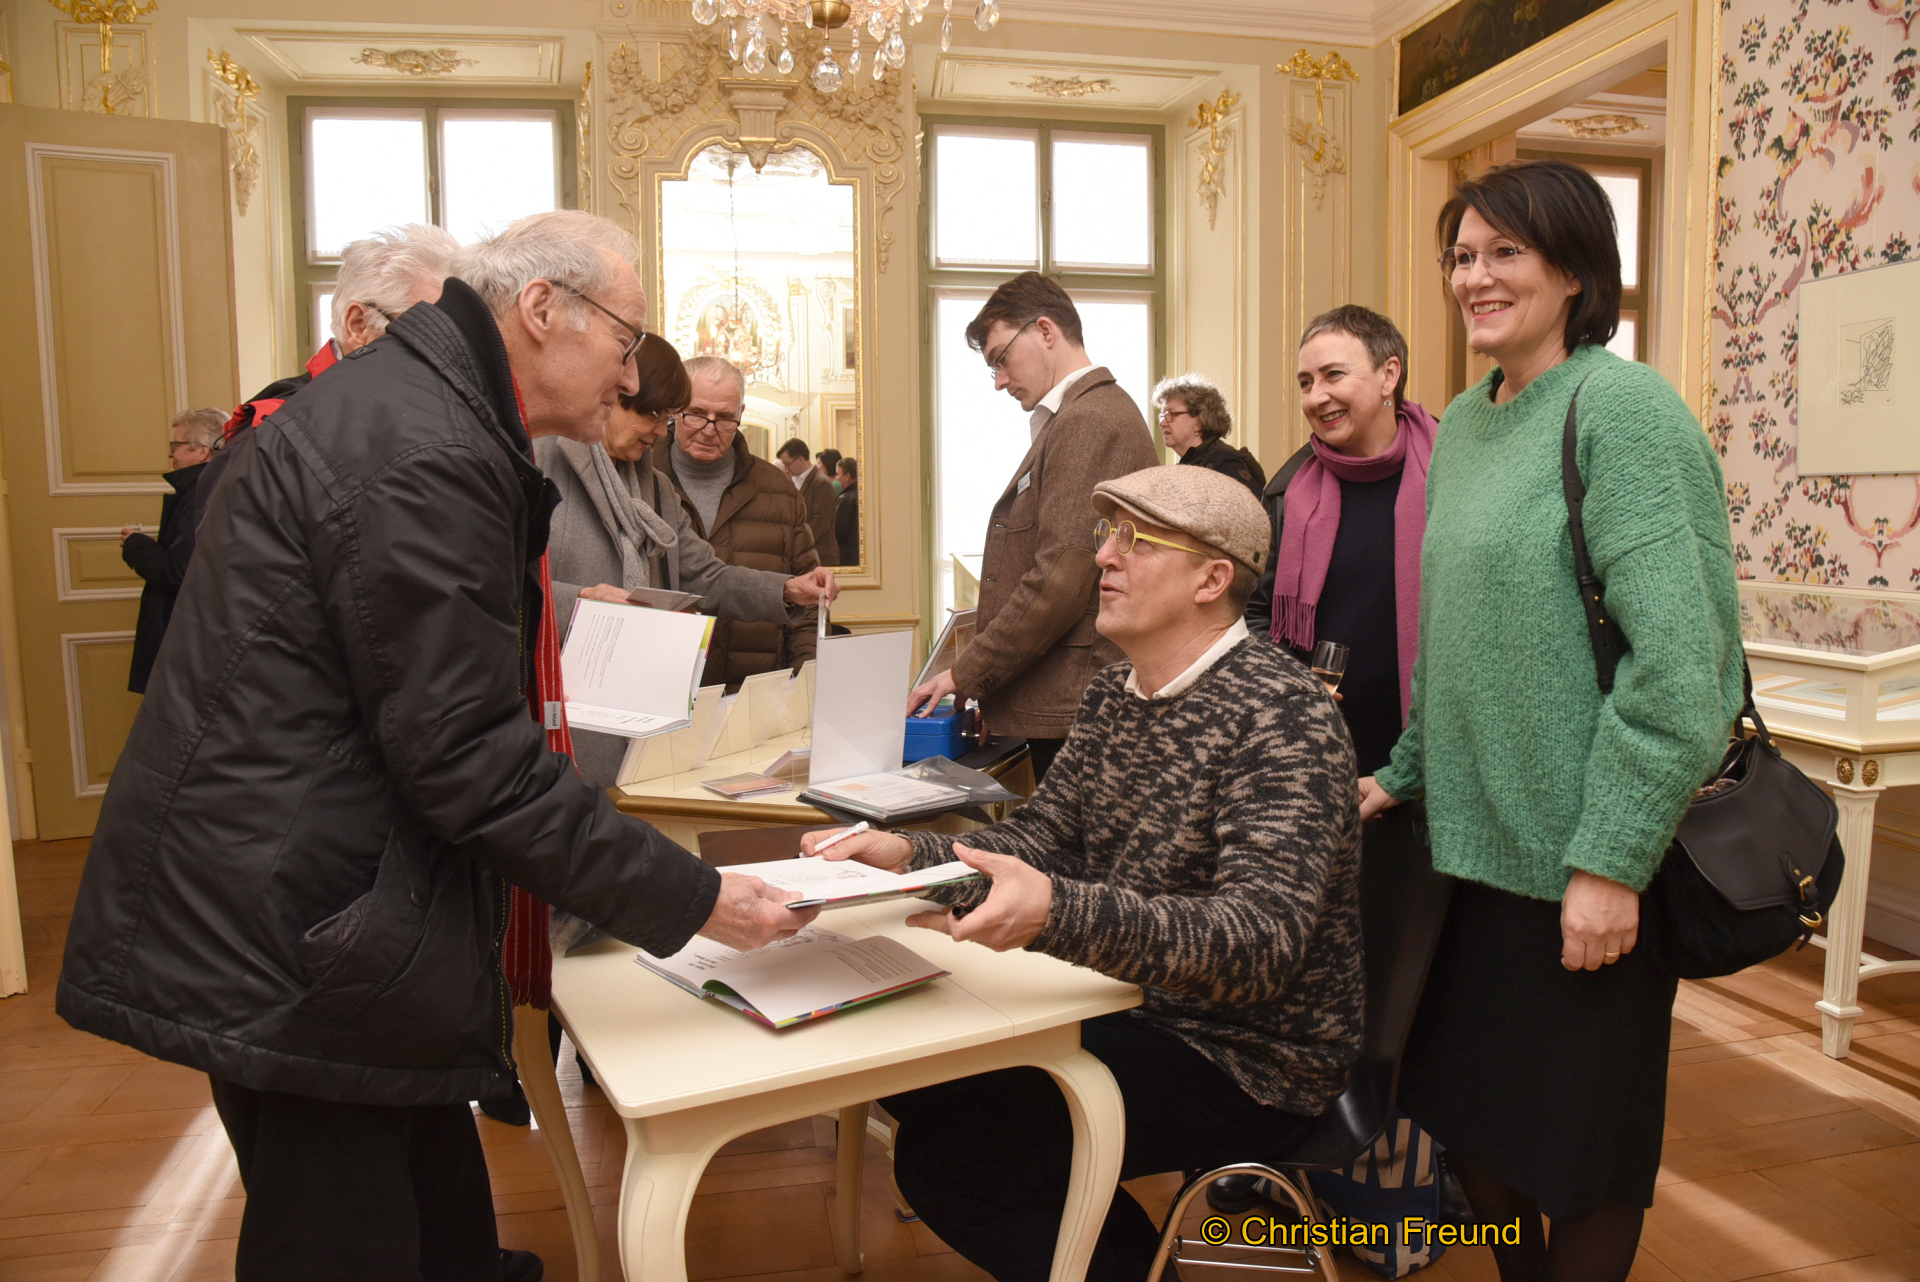 Während des Signierens machte es Dirk Meissner und seiner Frau Nina (2. rechts hinten) großen Spaß, mit den Besuchern der Ausstellungseröffnung ins Gespräch zu kommen.